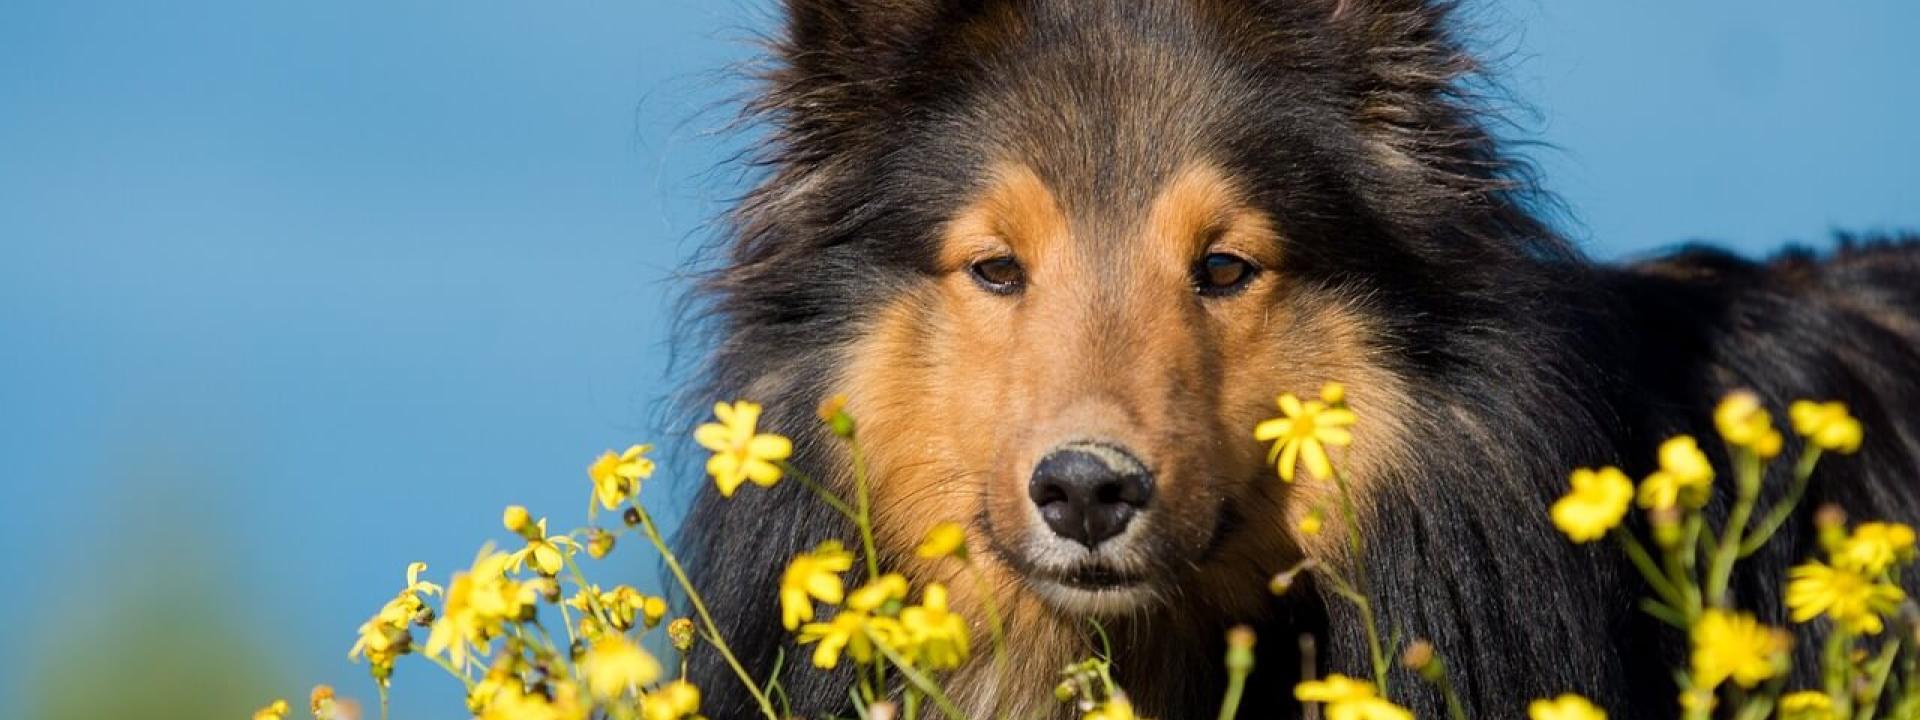 07-dog-flowers-allergies.jpg